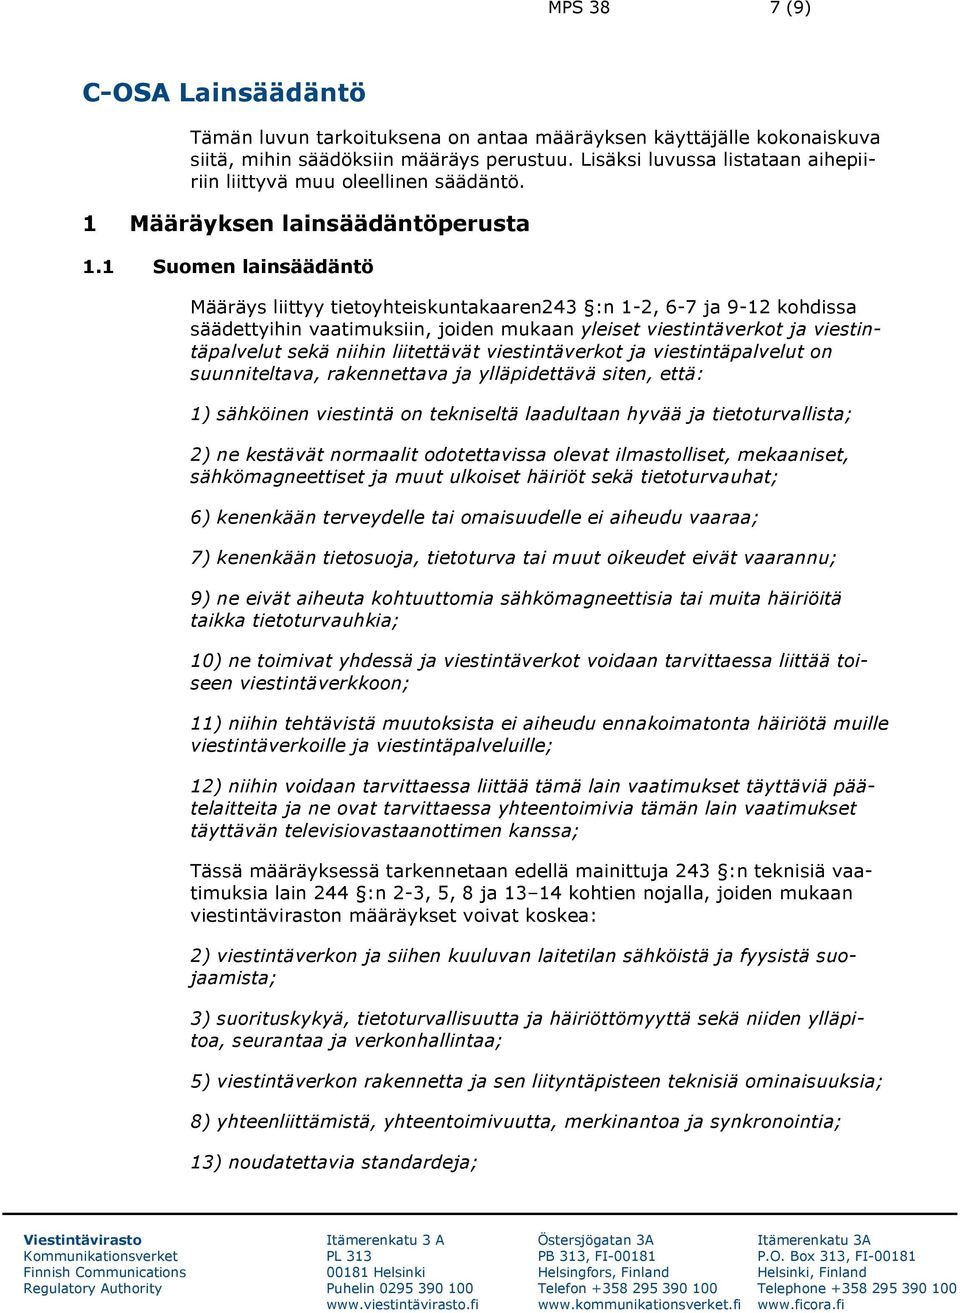 1 Suomen lainsäädäntö Määräys liittyy tietoyhteiskuntakaaren243 :n 1-2, 6-7 ja 9-12 kohdissa säädettyihin vaatimuksiin, joiden mukaan yleiset viestintäverkot ja viestintäpalvelut sekä niihin